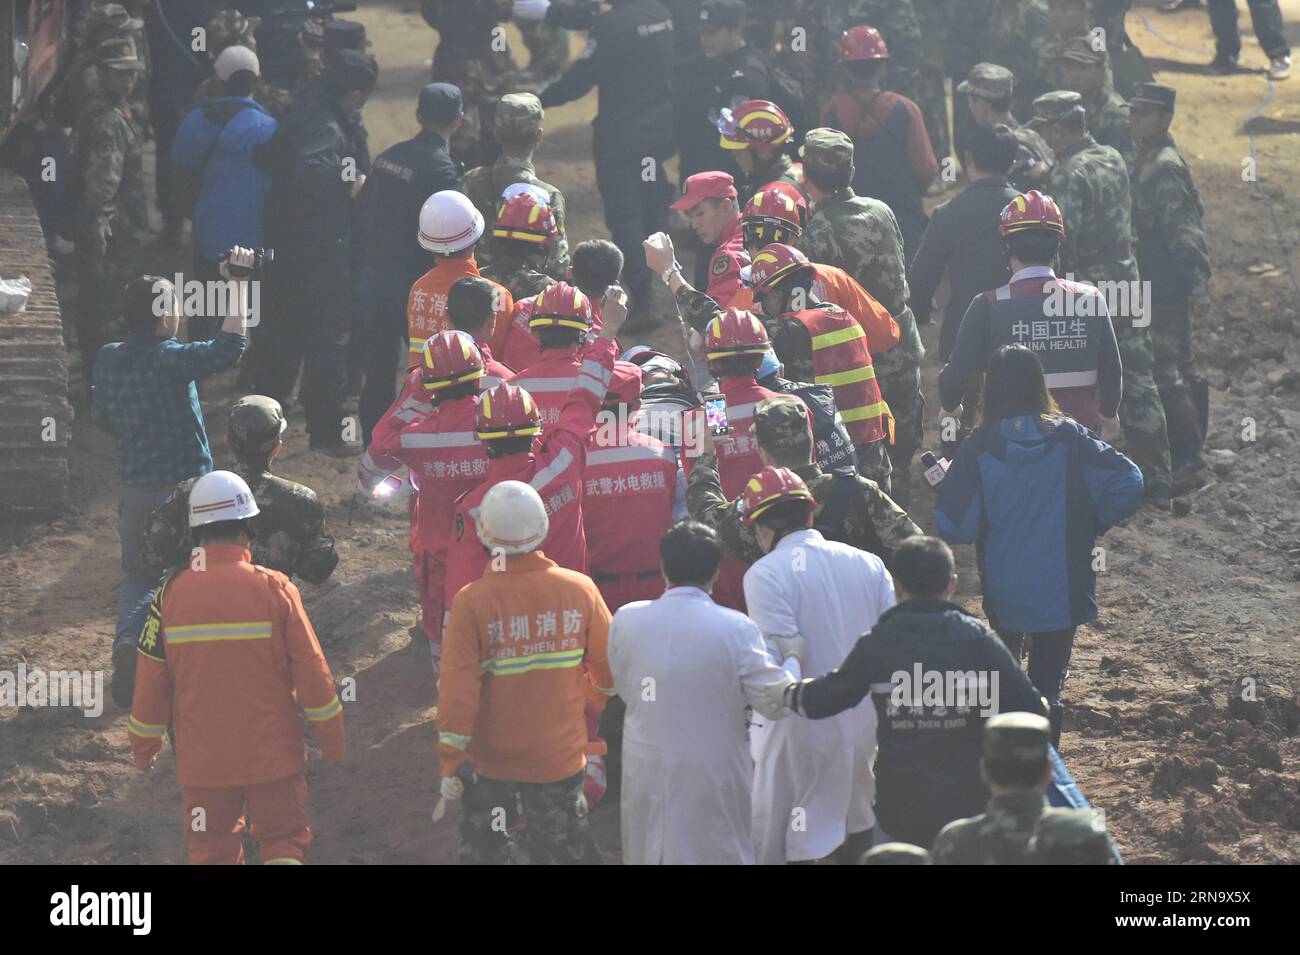 (151223) -- SHENZHEN, 23 décembre 2015 -- Un survivant a été trouvé sur le site d'un glissement de terrain dans un parc industriel de Shenzhen, dans la province du Guangdong du sud de la Chine, le 23 décembre 2015. Un homme a été sorti vivant tôt mercredi matin plus de 60 heures après un glissement de terrain à Shenzhen. ) (lfj) CHINA-SHENZHEN-LANDSLIDE-SURVIVOR (CN) LiangxXu PUBLICATIONxNOTxINxCHN Shenzhen DEC 23 2015 un survivant EST trouvé SUR le site de glissement de terrain À au parc industriel de Shenzhen South China S Guangdong province DEC 23 2015 un homme qui a retiré Herrera tôt mercredi matin plus de 60 heures après un glissement de terrain à Shenzhe Banque D'Images